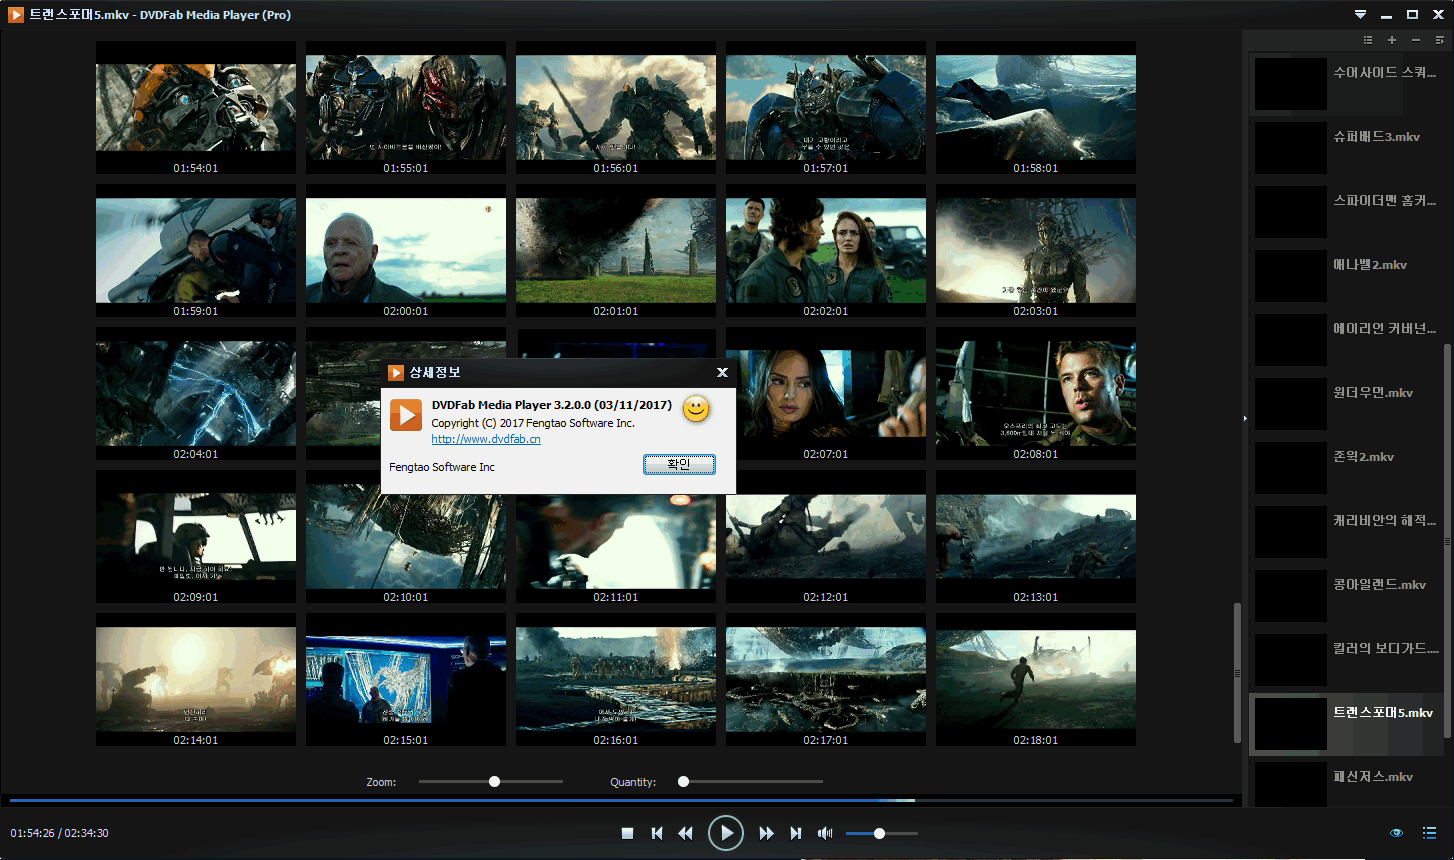 dvdfab media player pro visualization